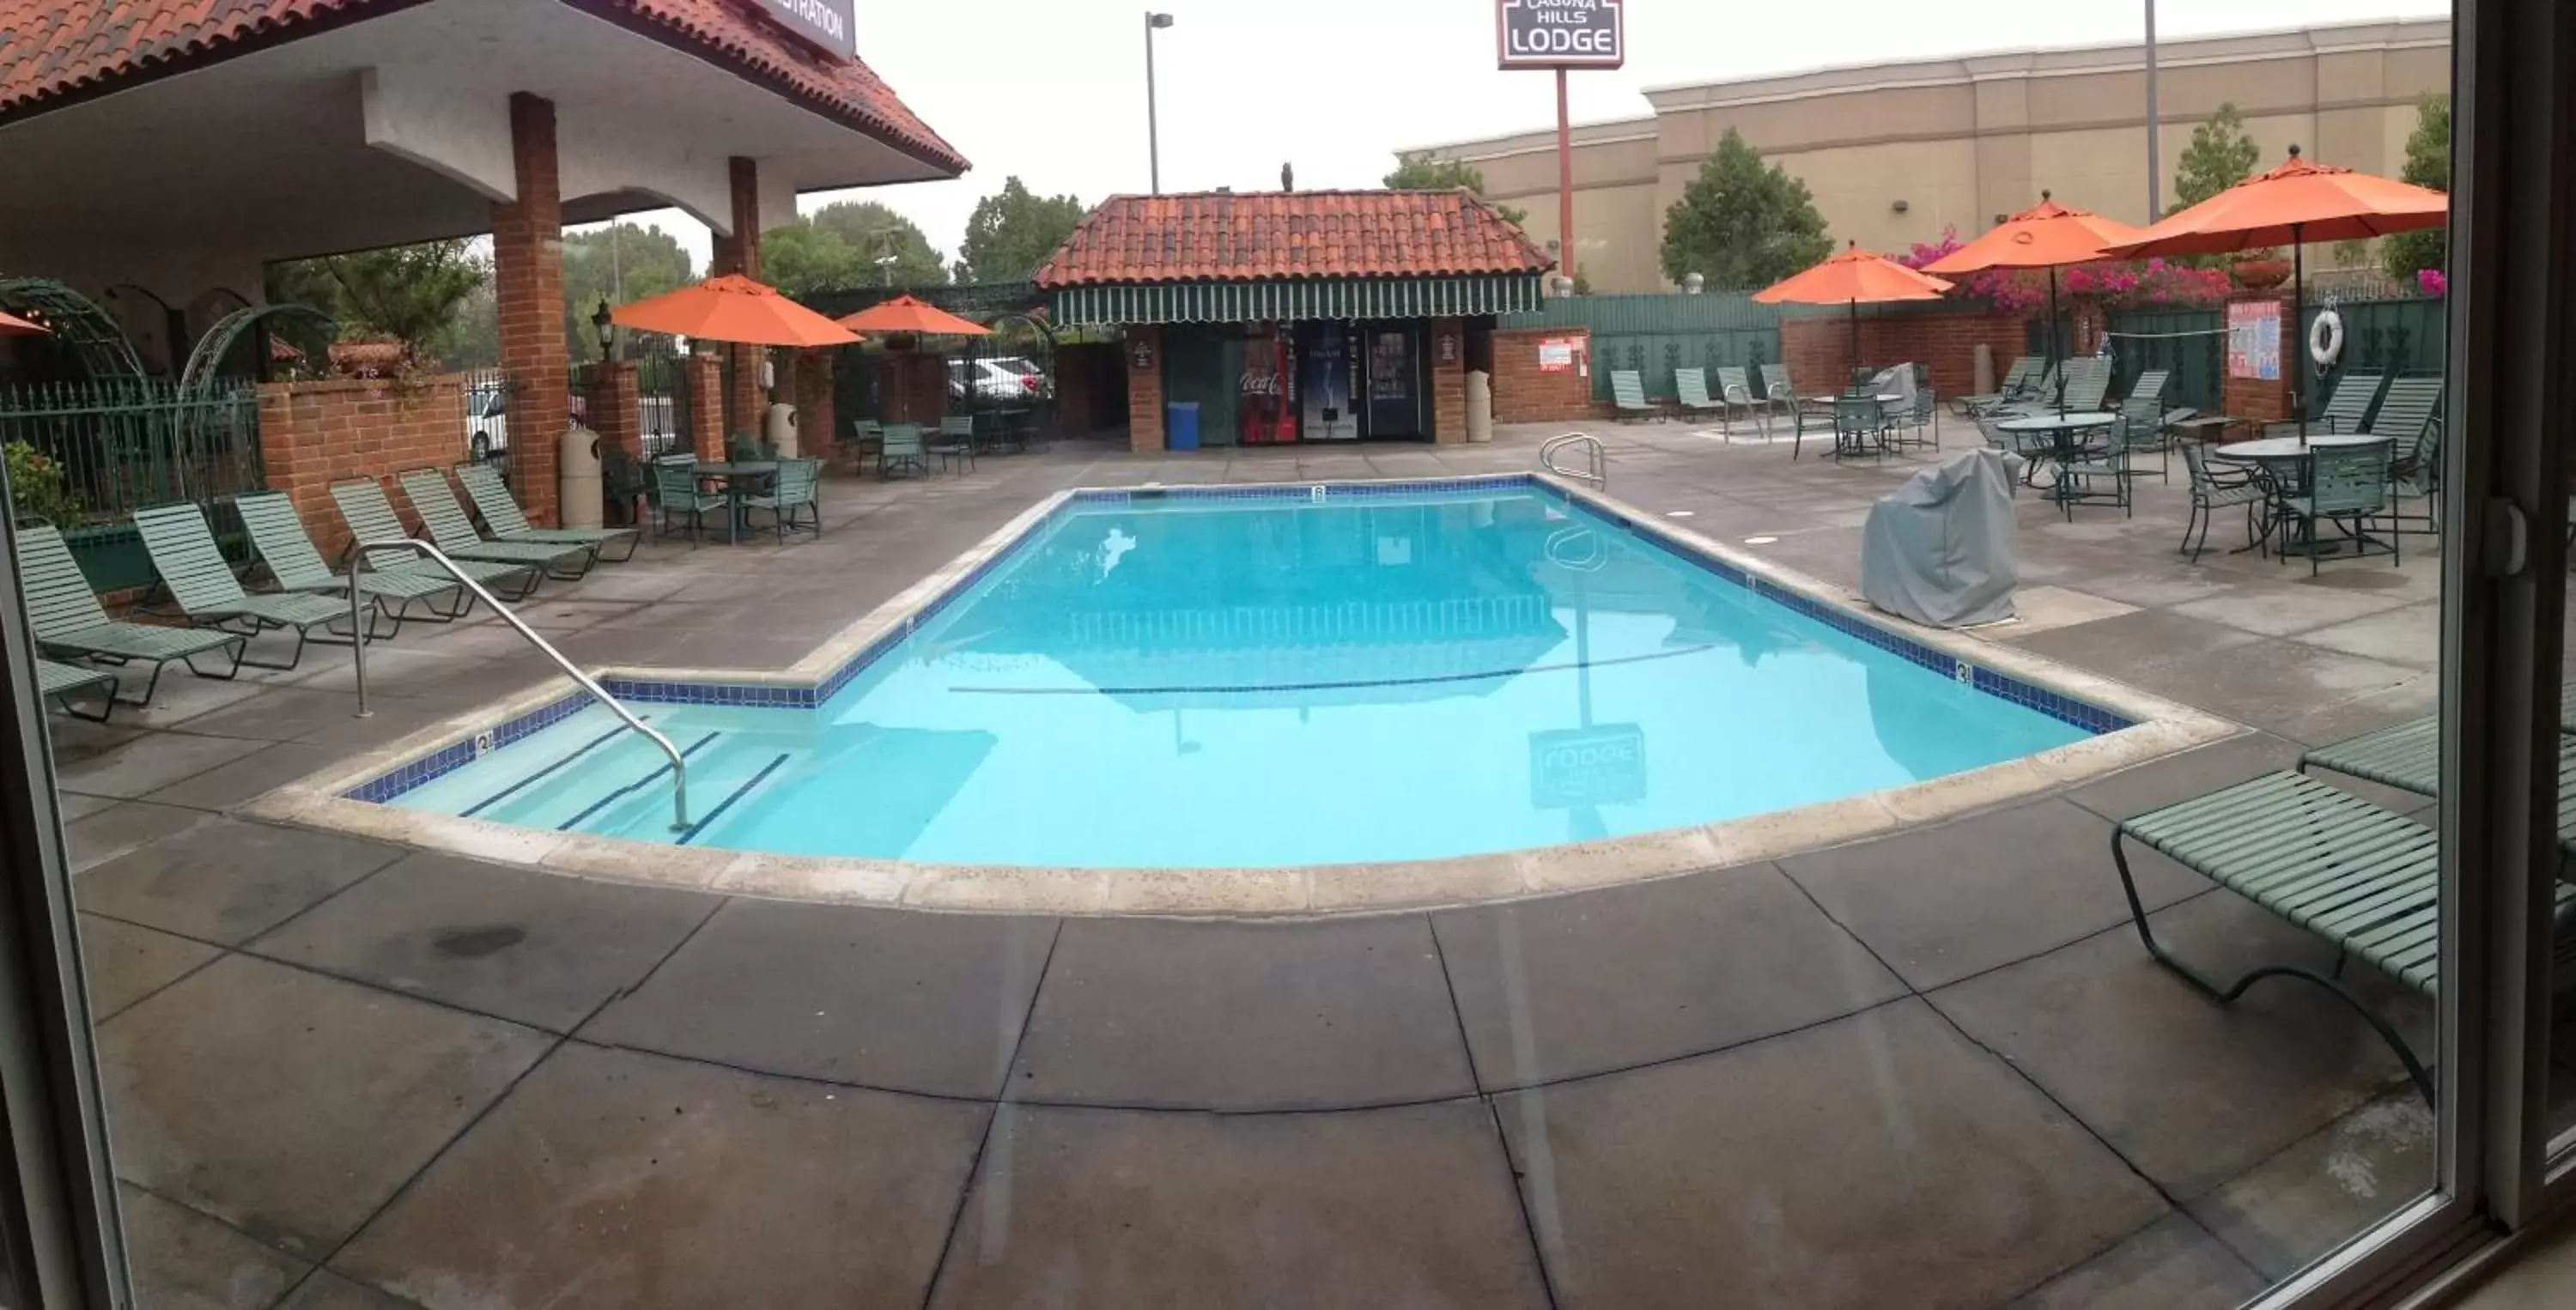 Swimming Pool in Laguna Hills Lodge-Irvine Spectrum